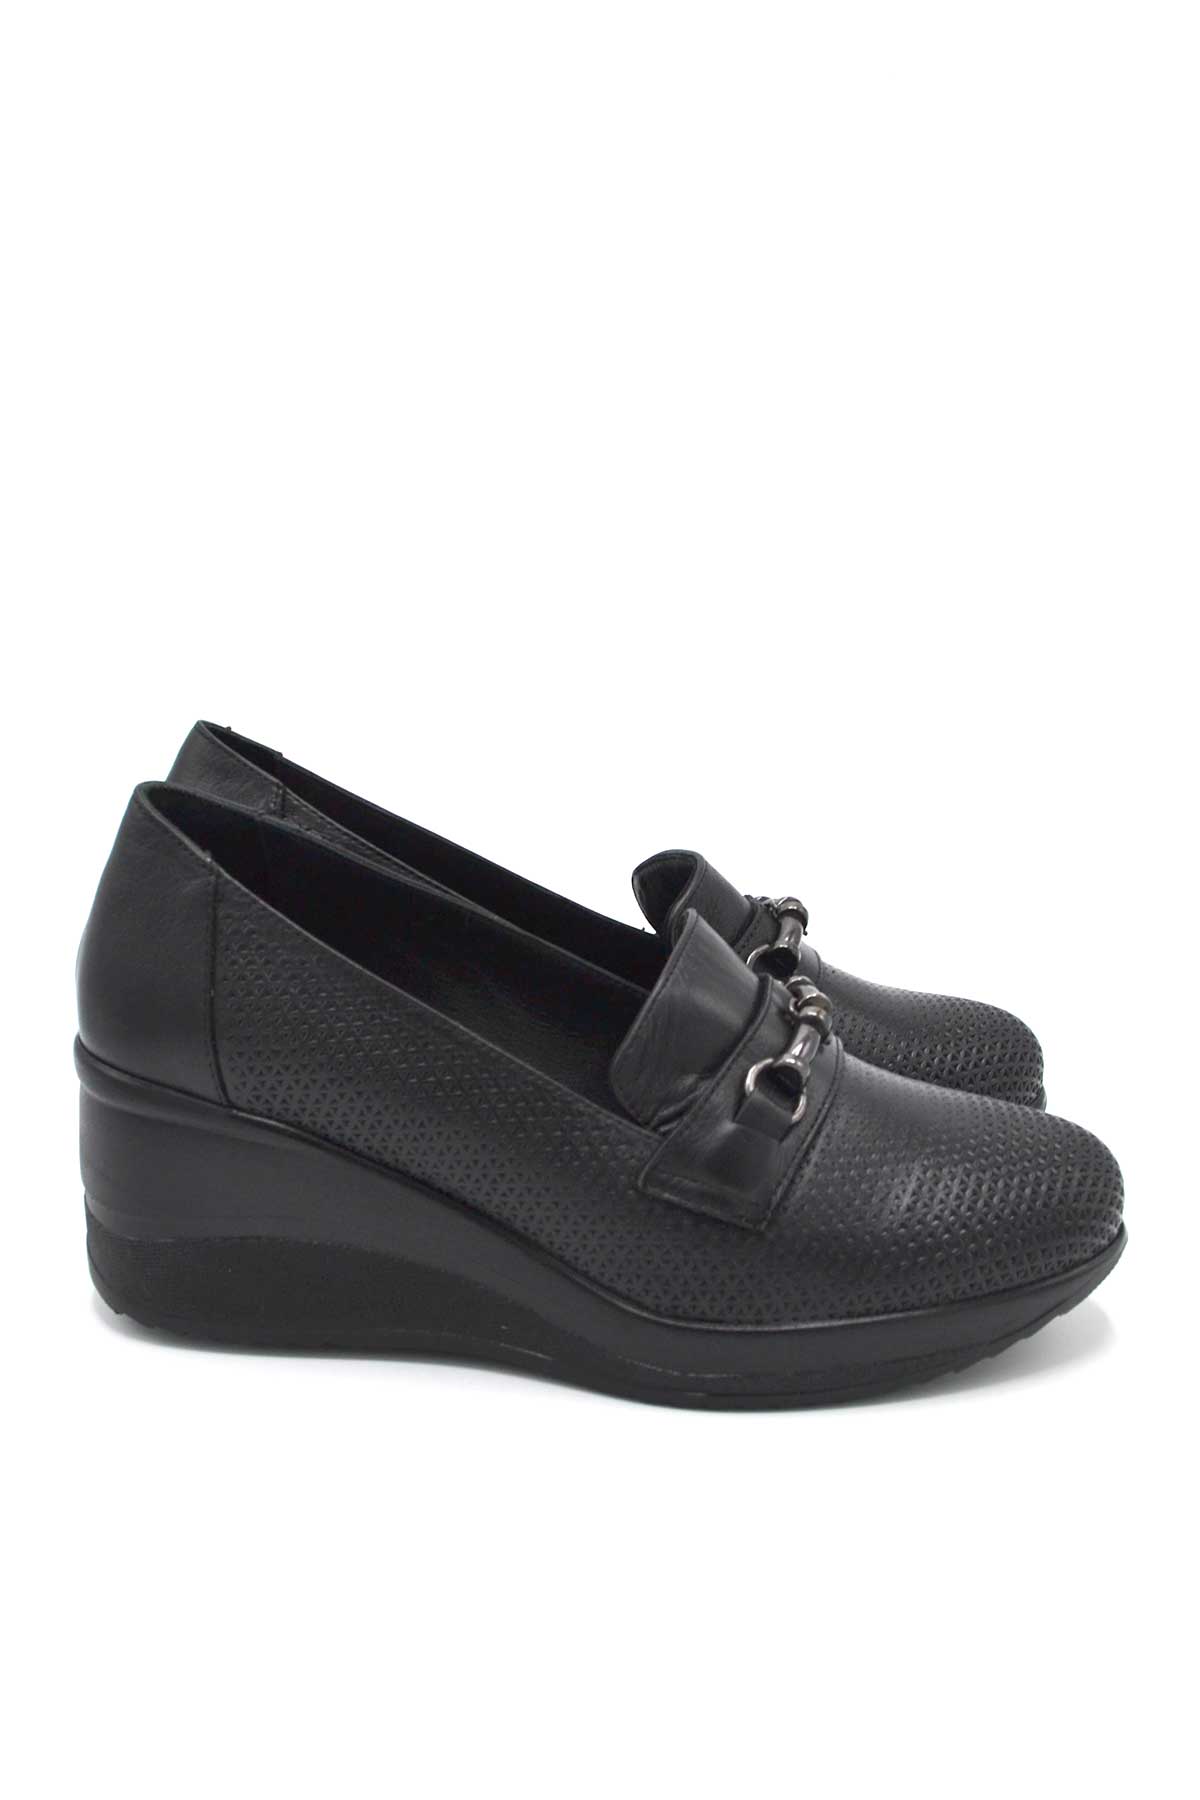 Kadın Dolgu Topuk Deri Ayakkabı Siyah 2111514Y - Thumbnail